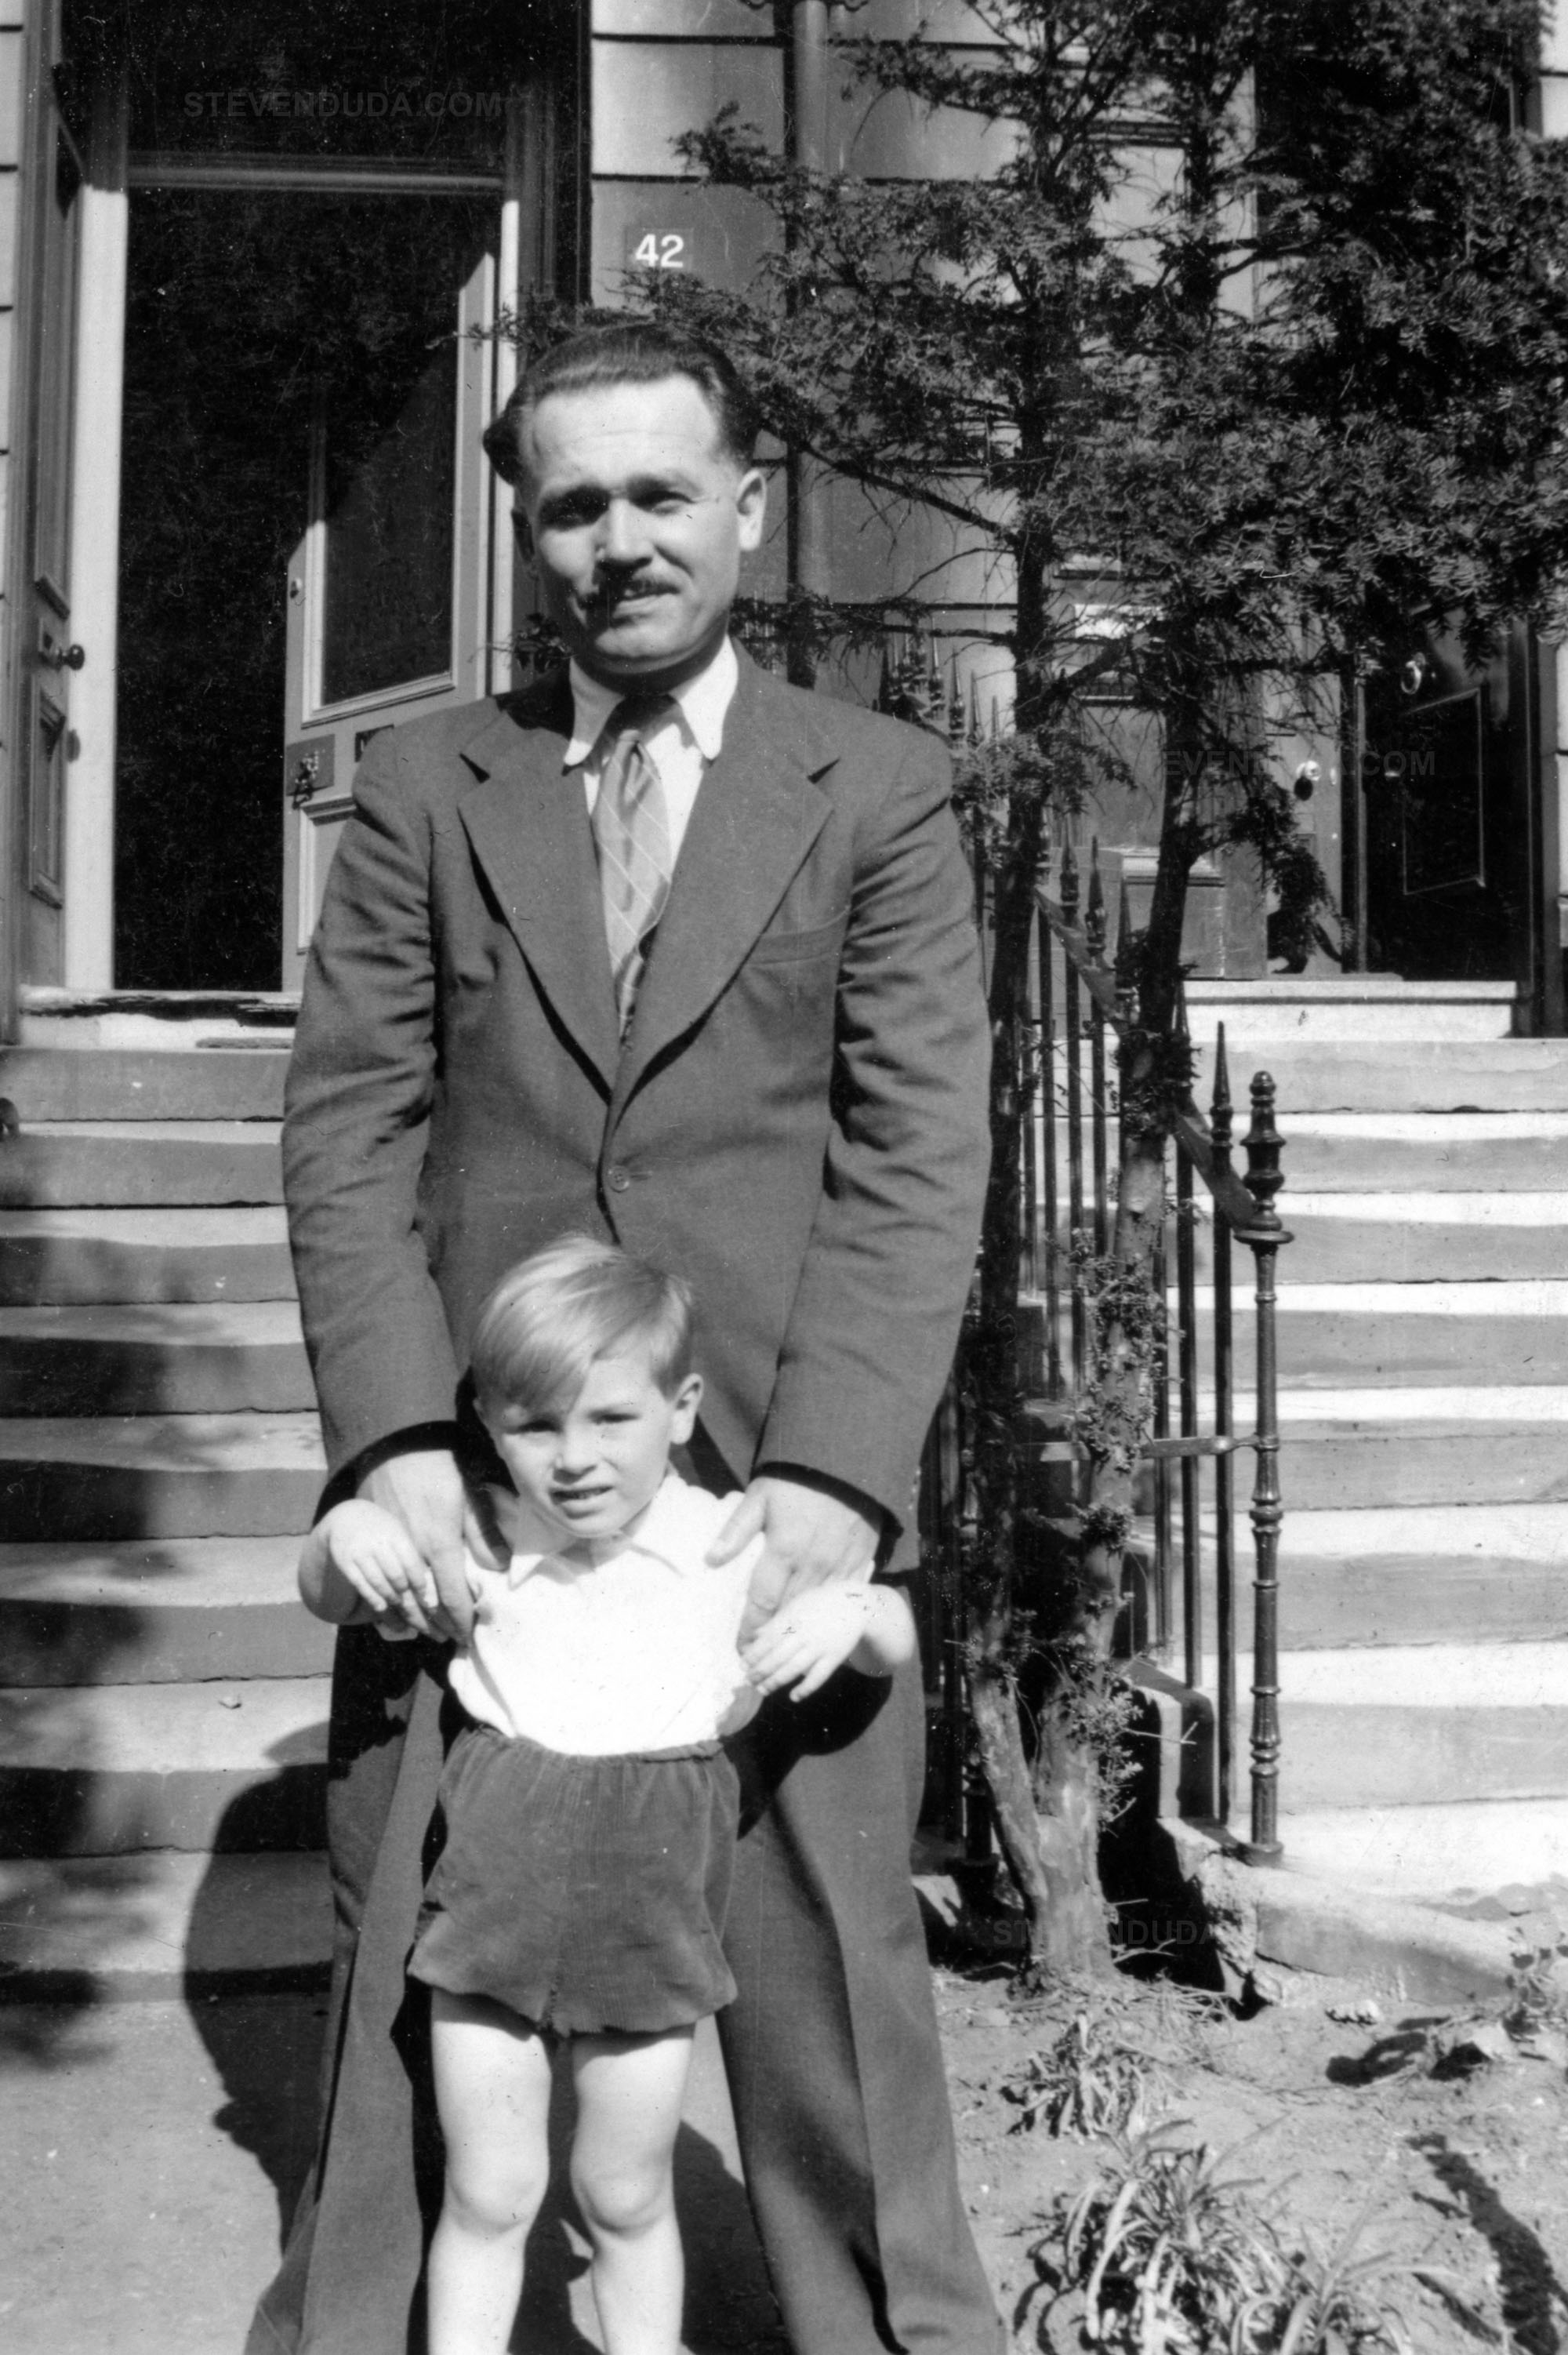 Kazimierz et son fils Richard - Ecosse - Glasgow, 42 Queen's Square - 1950